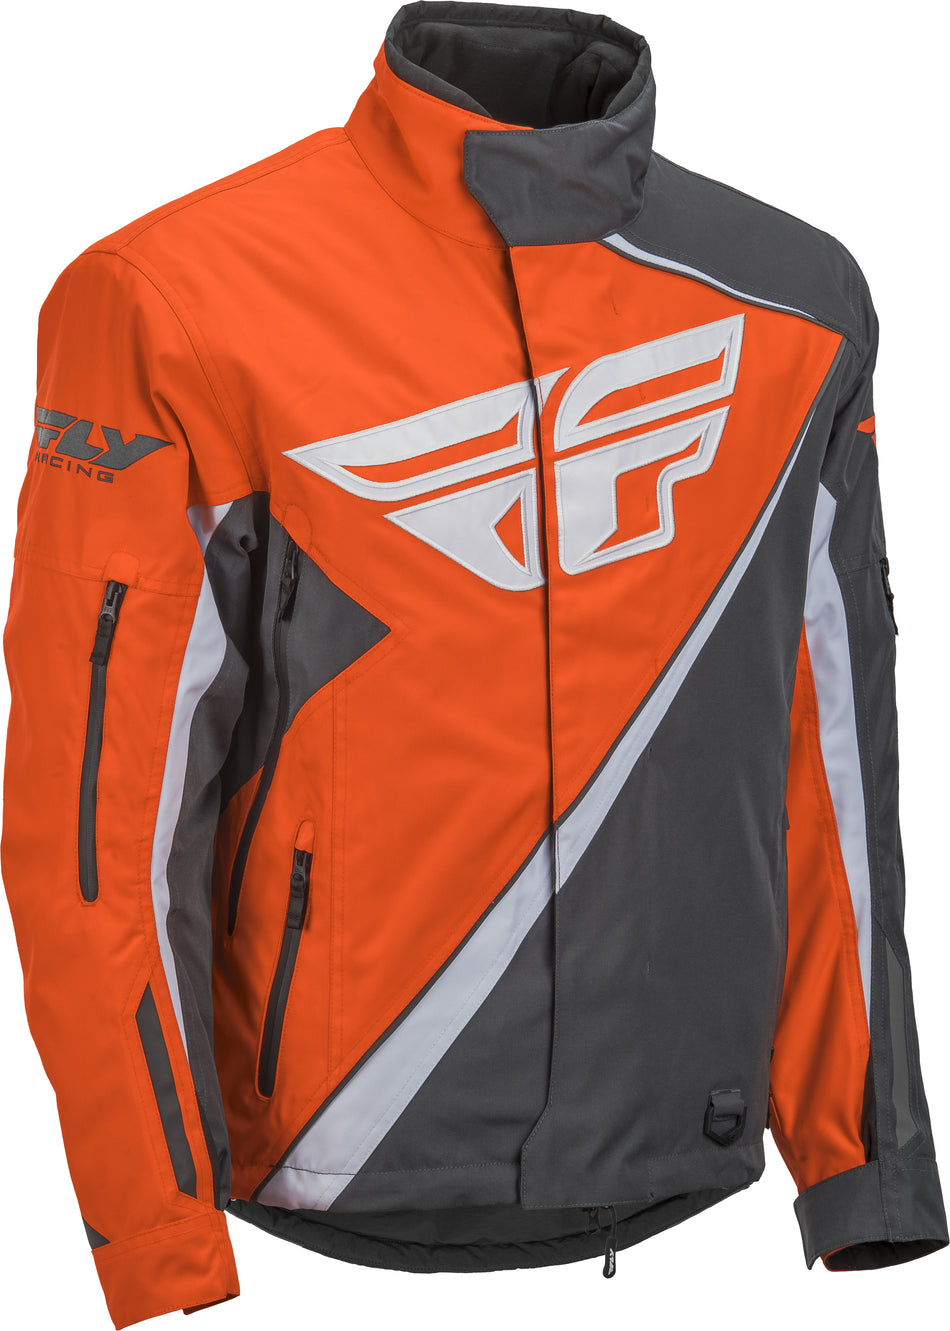 FLY RACING Snx Pro Jacket Orange/Grey Xl 470-4088X